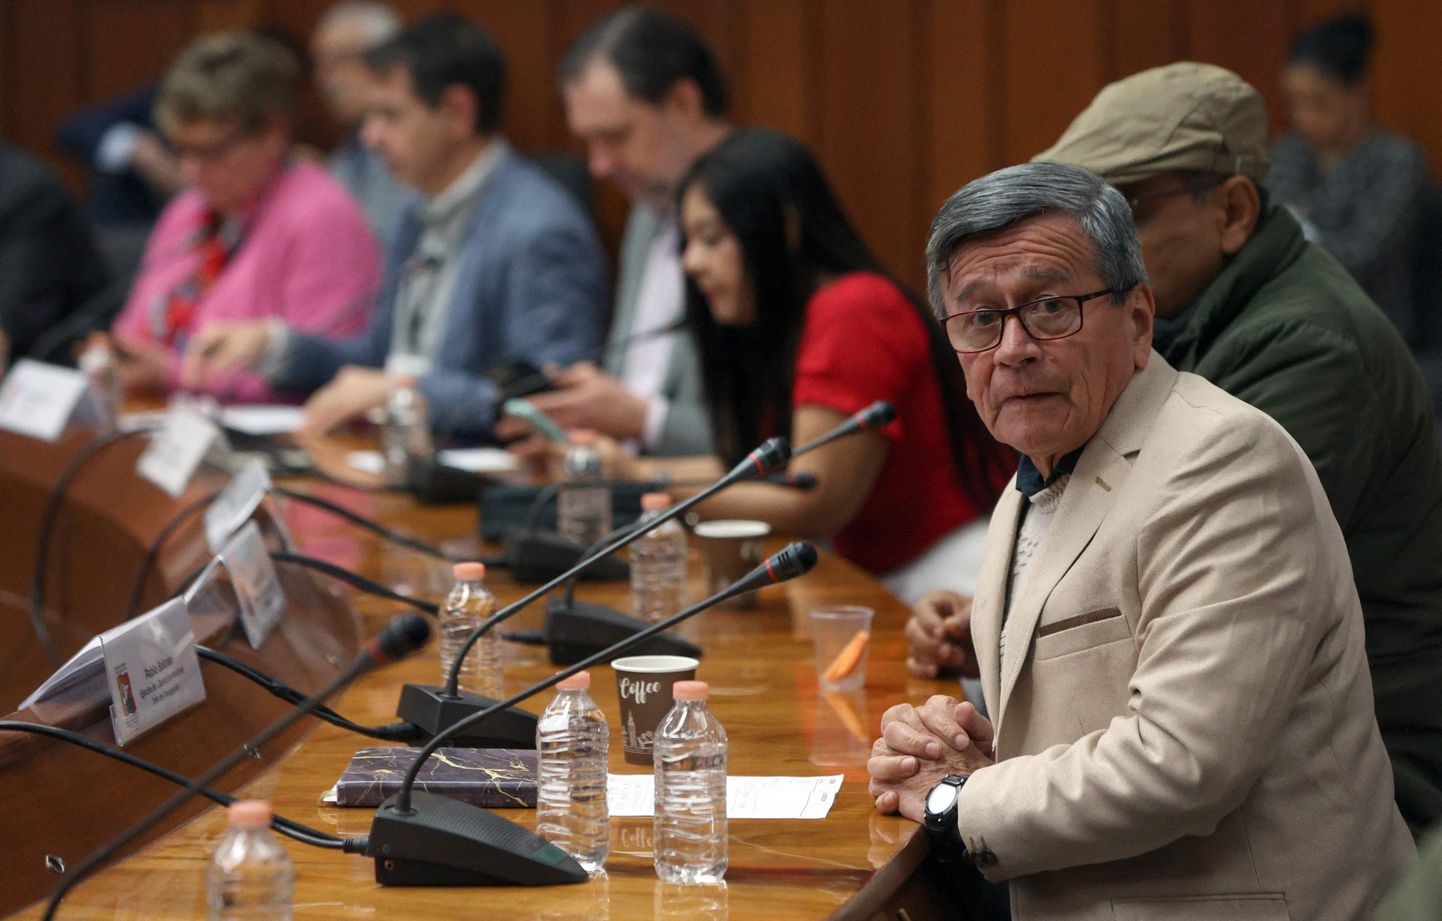 Colombia vasaksisside rühmituse ELN delegatsiooni juhtiv Pablo Beltran.